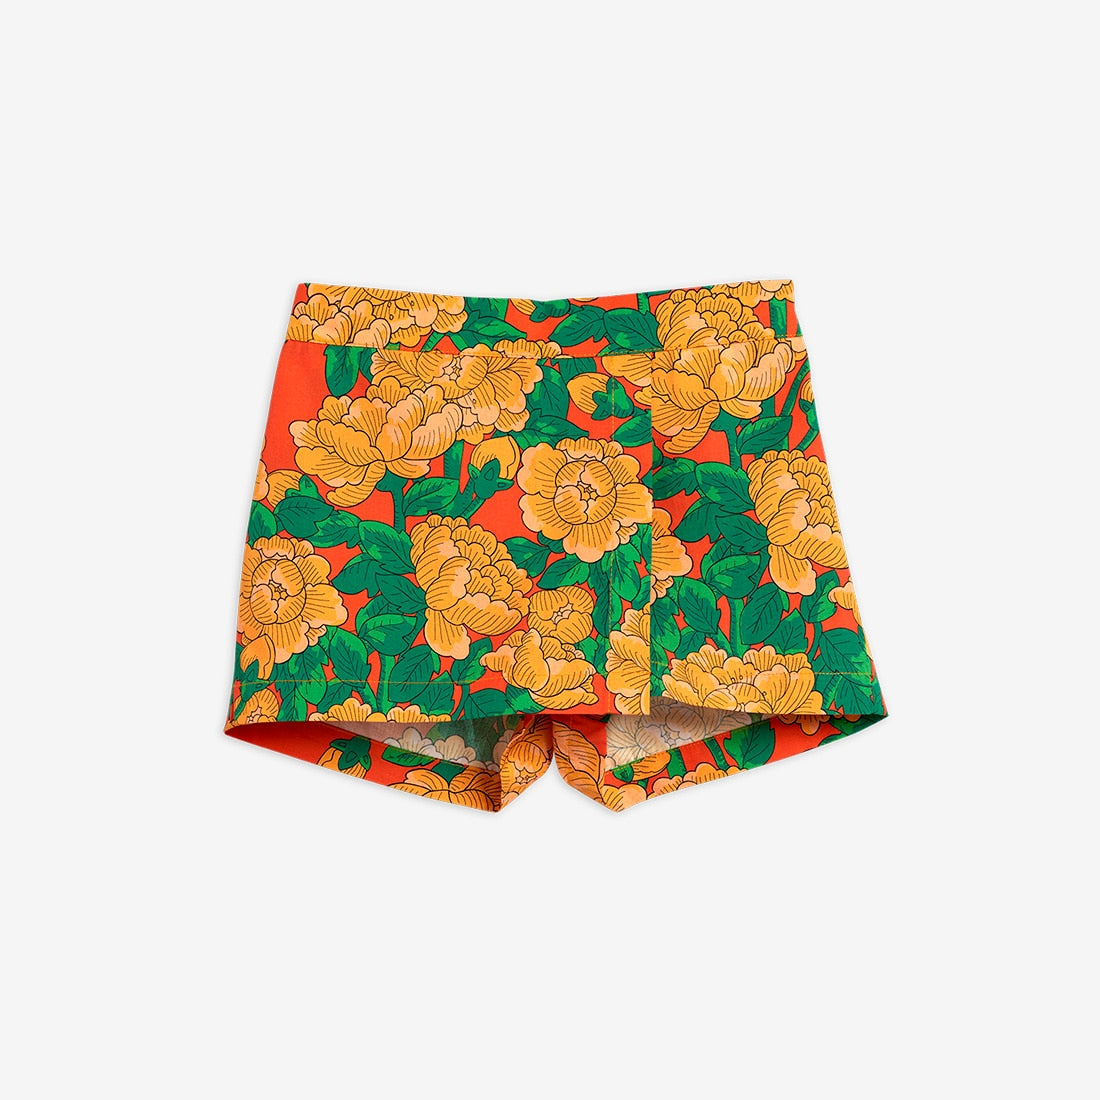 Mini Rodini peonies woven shorts